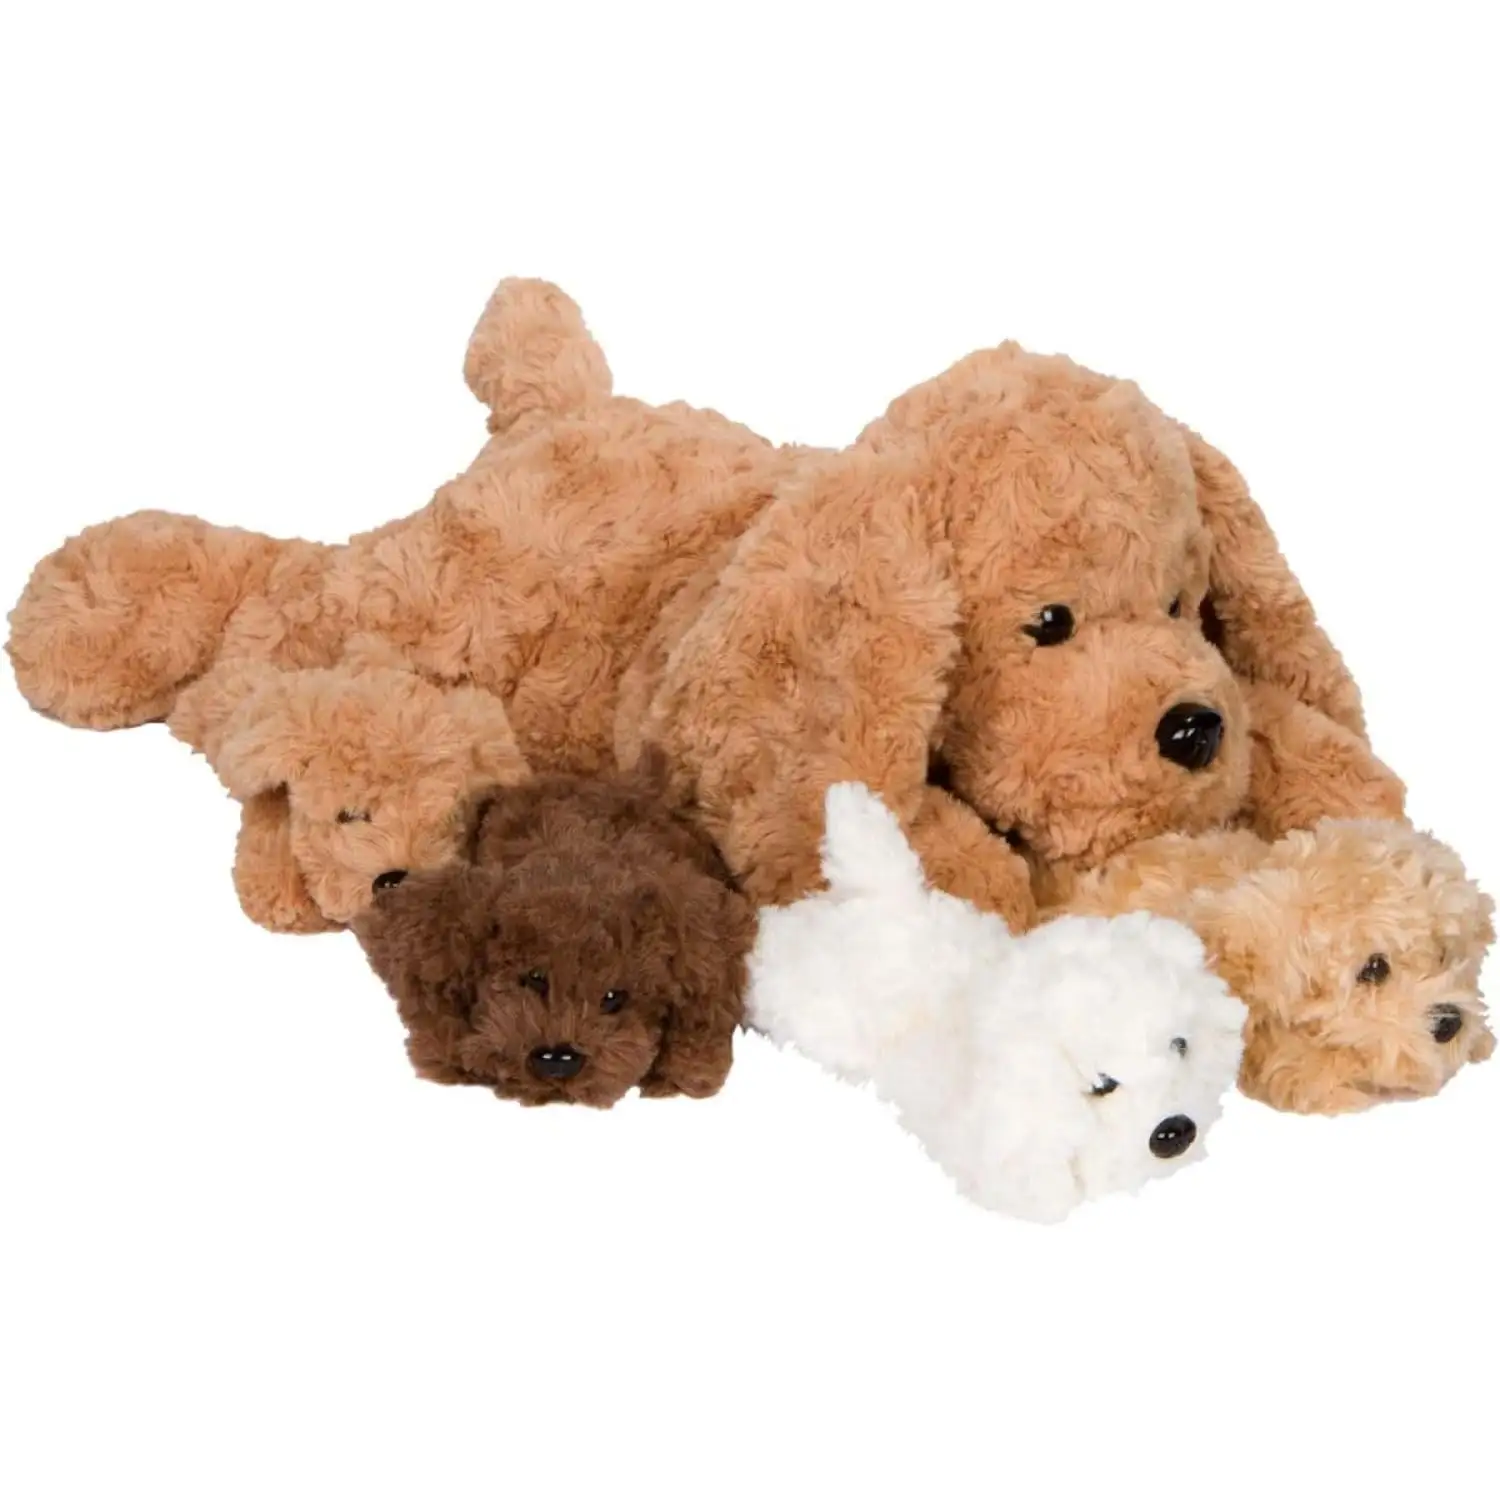 Perro animales de peluche niñas cachorros perro mágico almohada Plushie encantador cachorro sorpresa juguetes para juego imaginativo